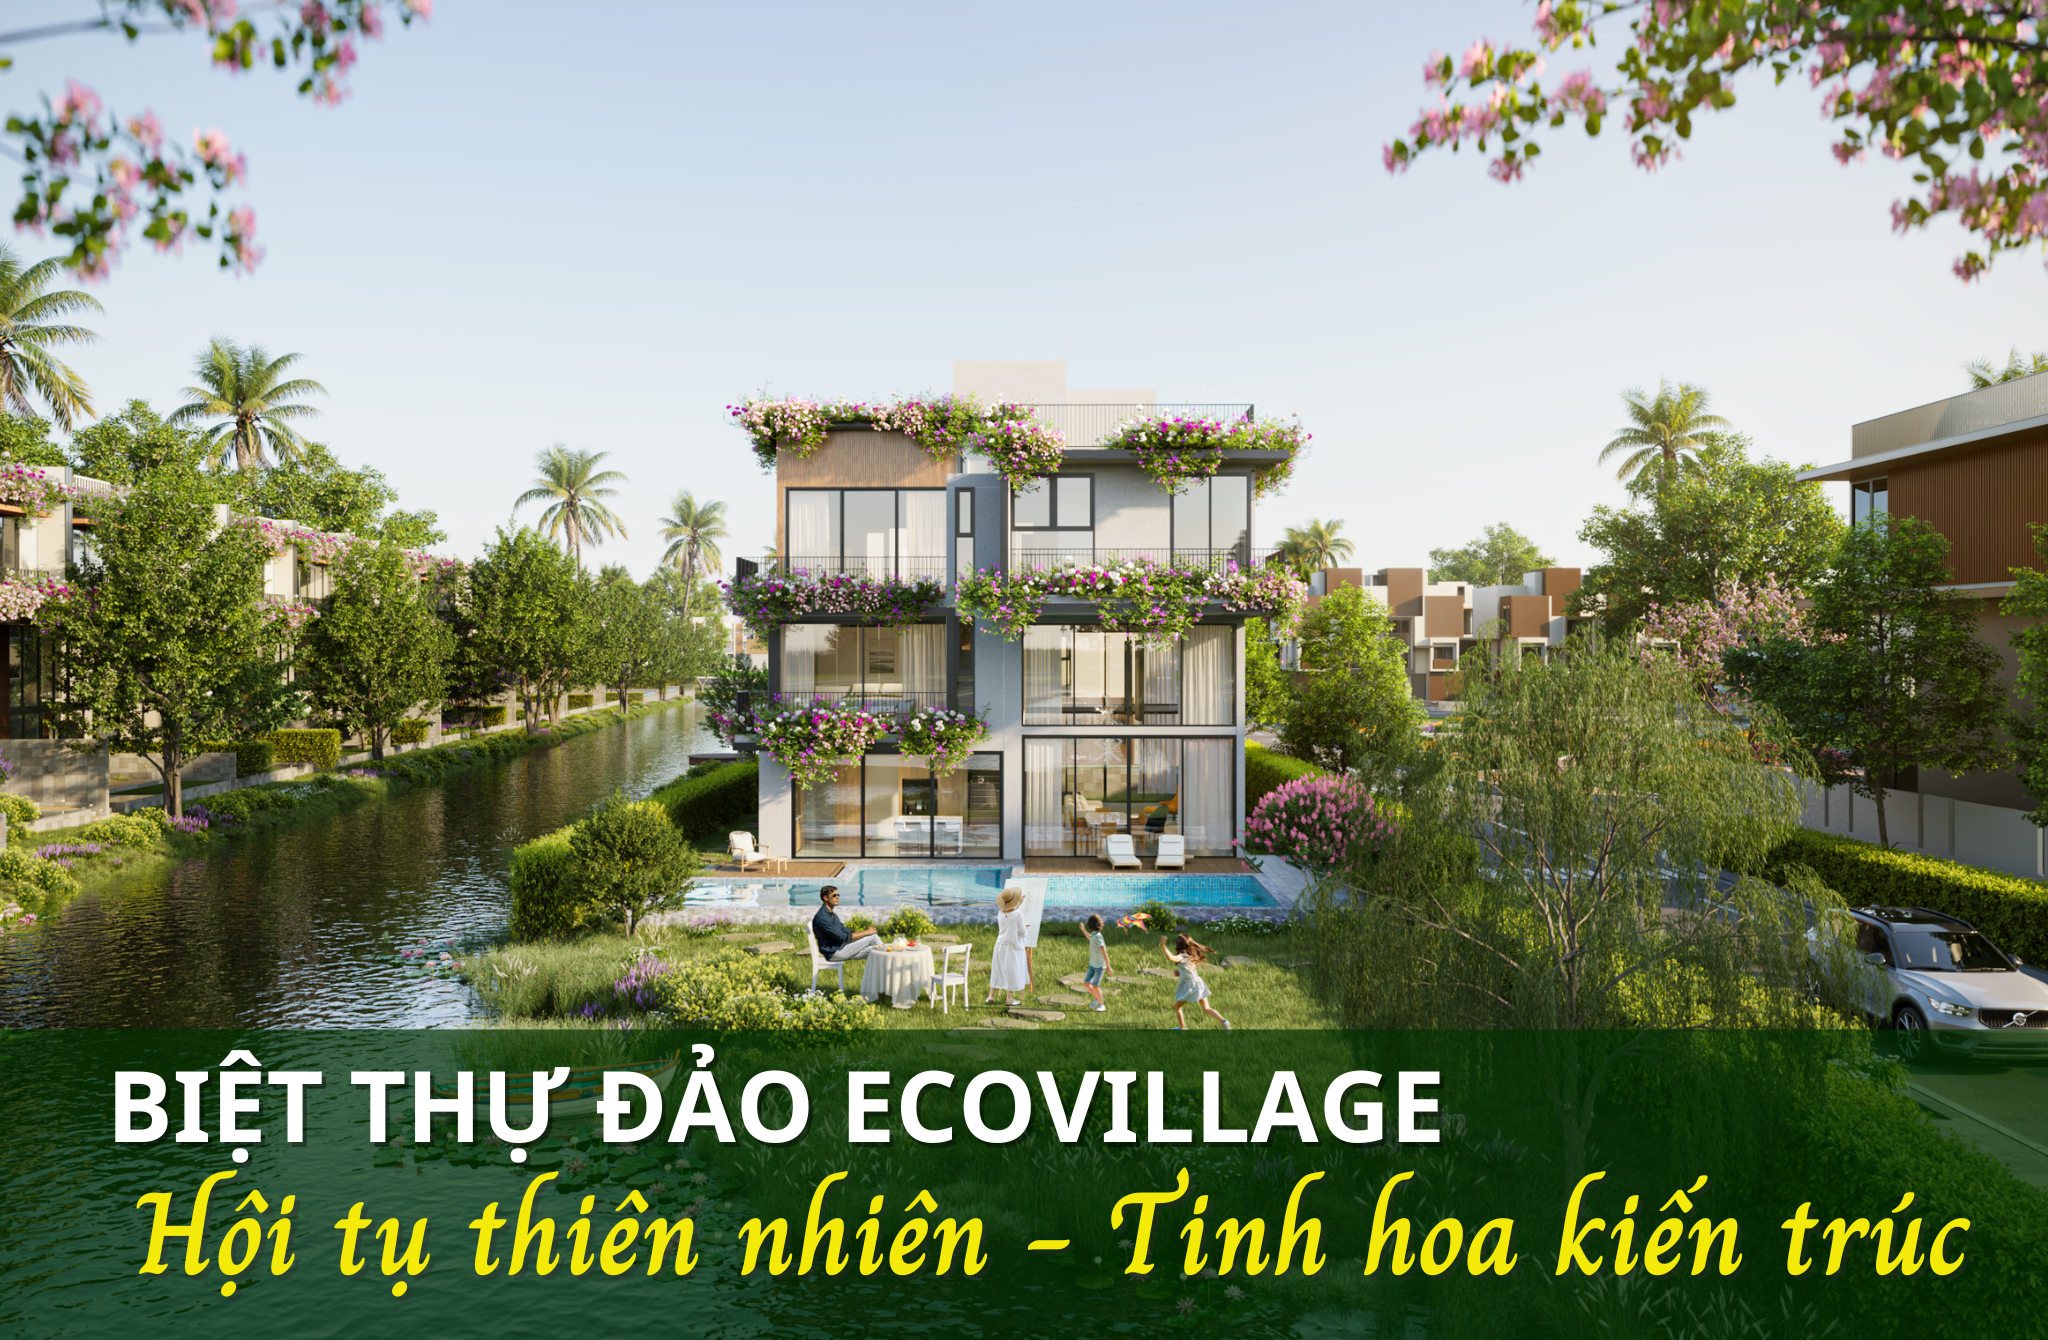 Biệt thự đảo Riverwalk Ecovillage: Hội tụ thiên nhiên, Tinh hoa kiến trúc